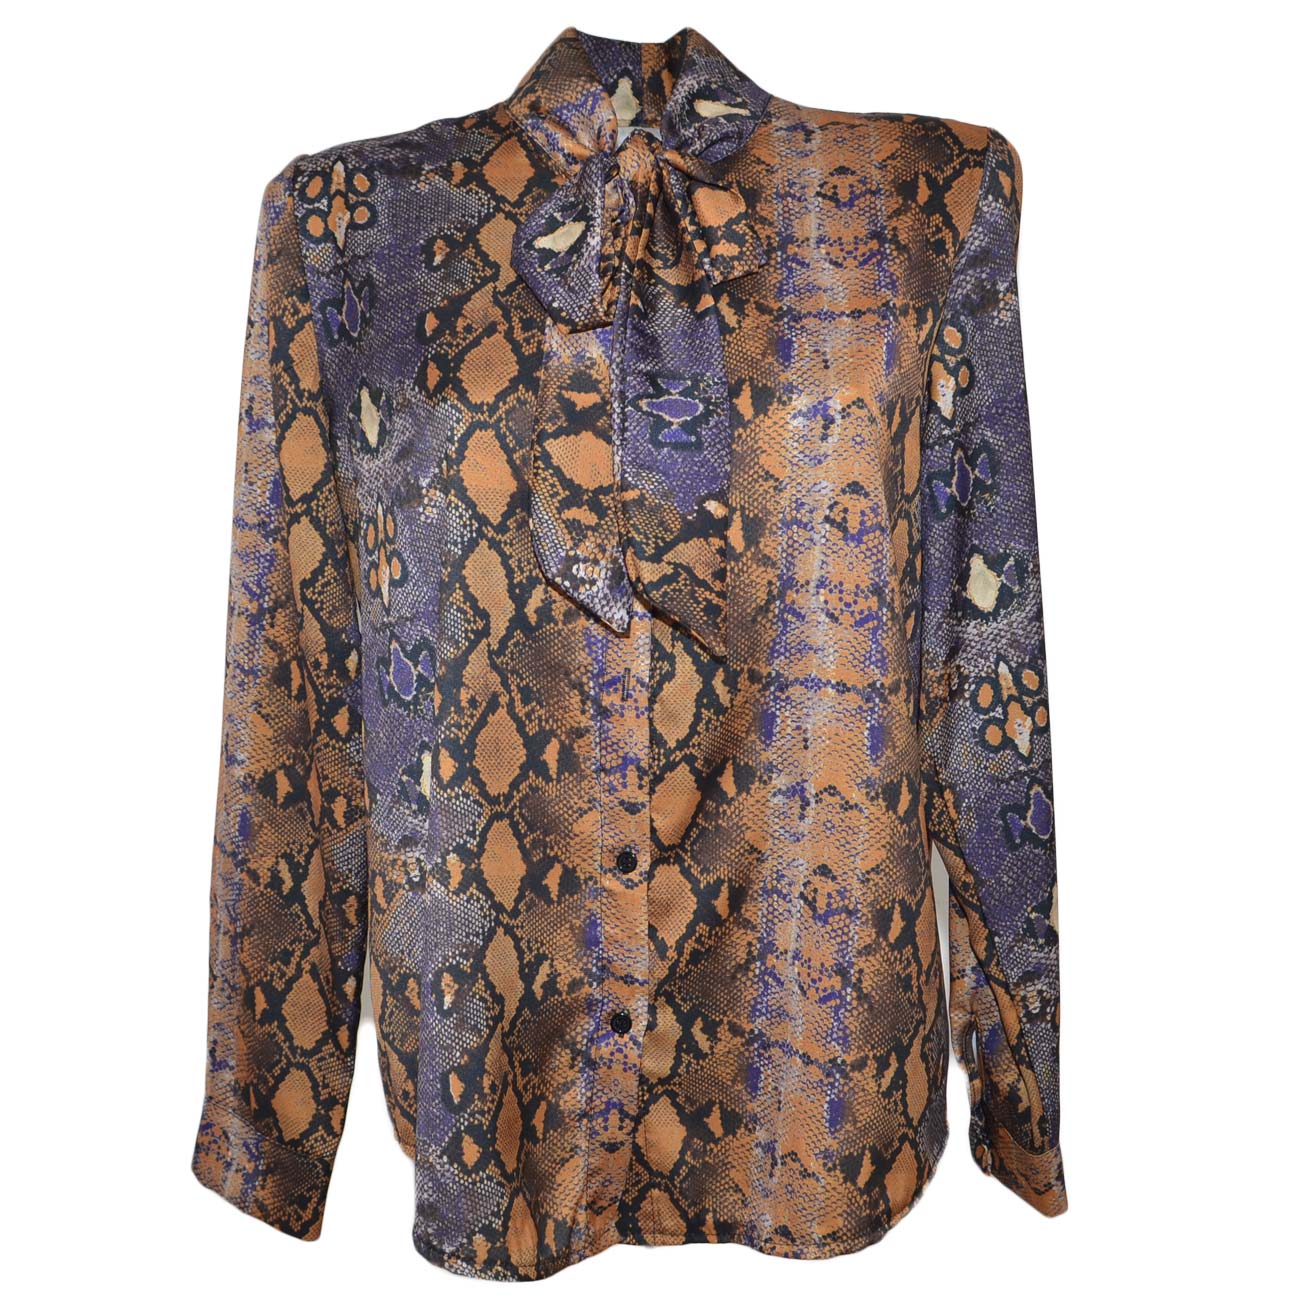 Camicia donna blusa in raso con colletto e foulard fantasia animalier viola linea Basic e cordini in tinta shabby chic